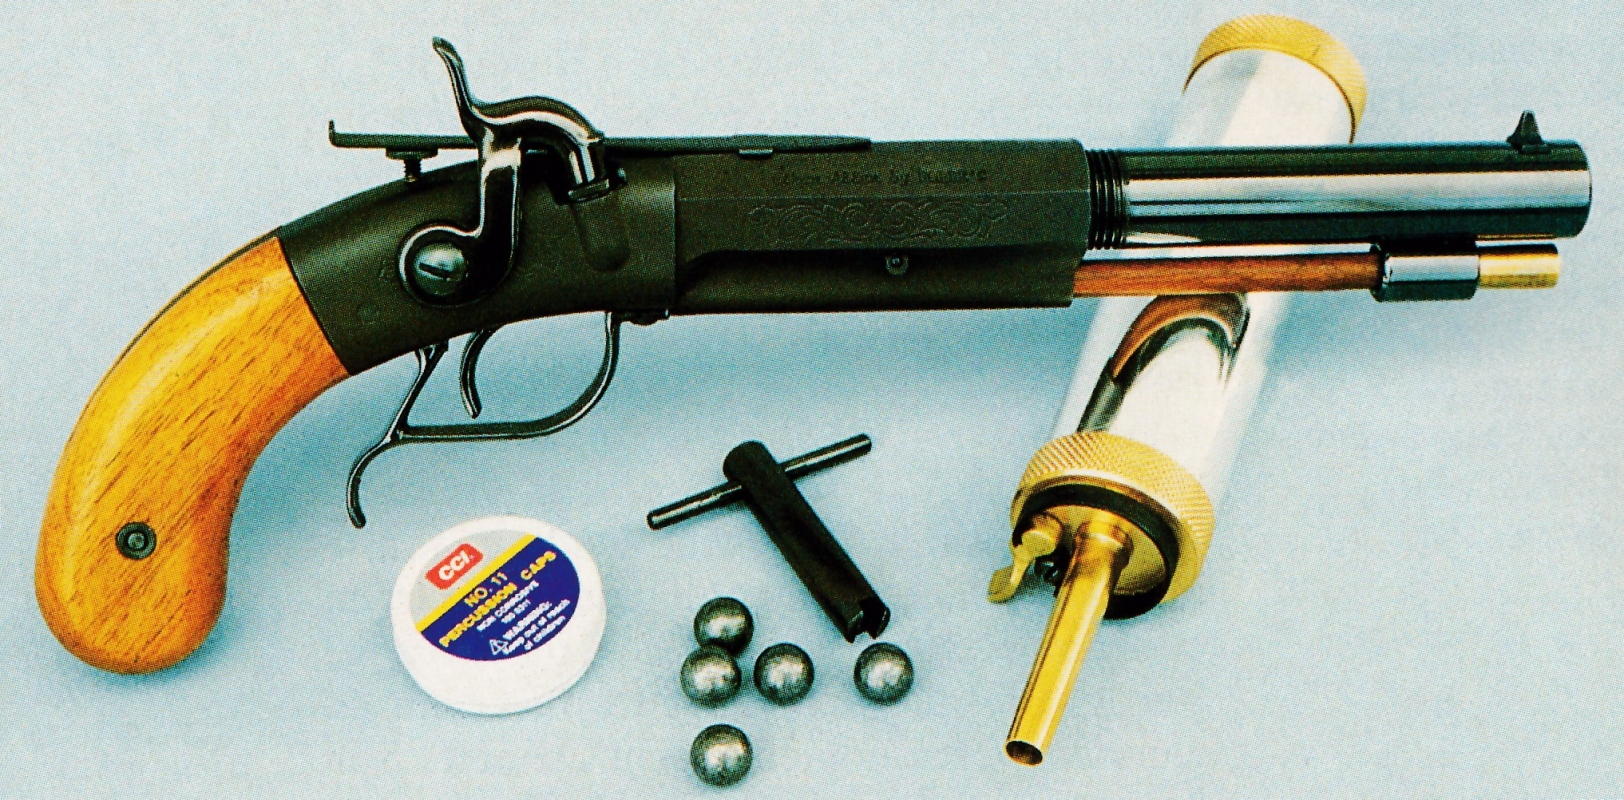 Plus connue par ses produits d'entretien pour armes, la firme américaine Hoppe"s a commercialisé cette étonnante réplique du pistolet Single Shot Sidehammer Target fabriqué par Allen & Thurber aux alentours de 1850.